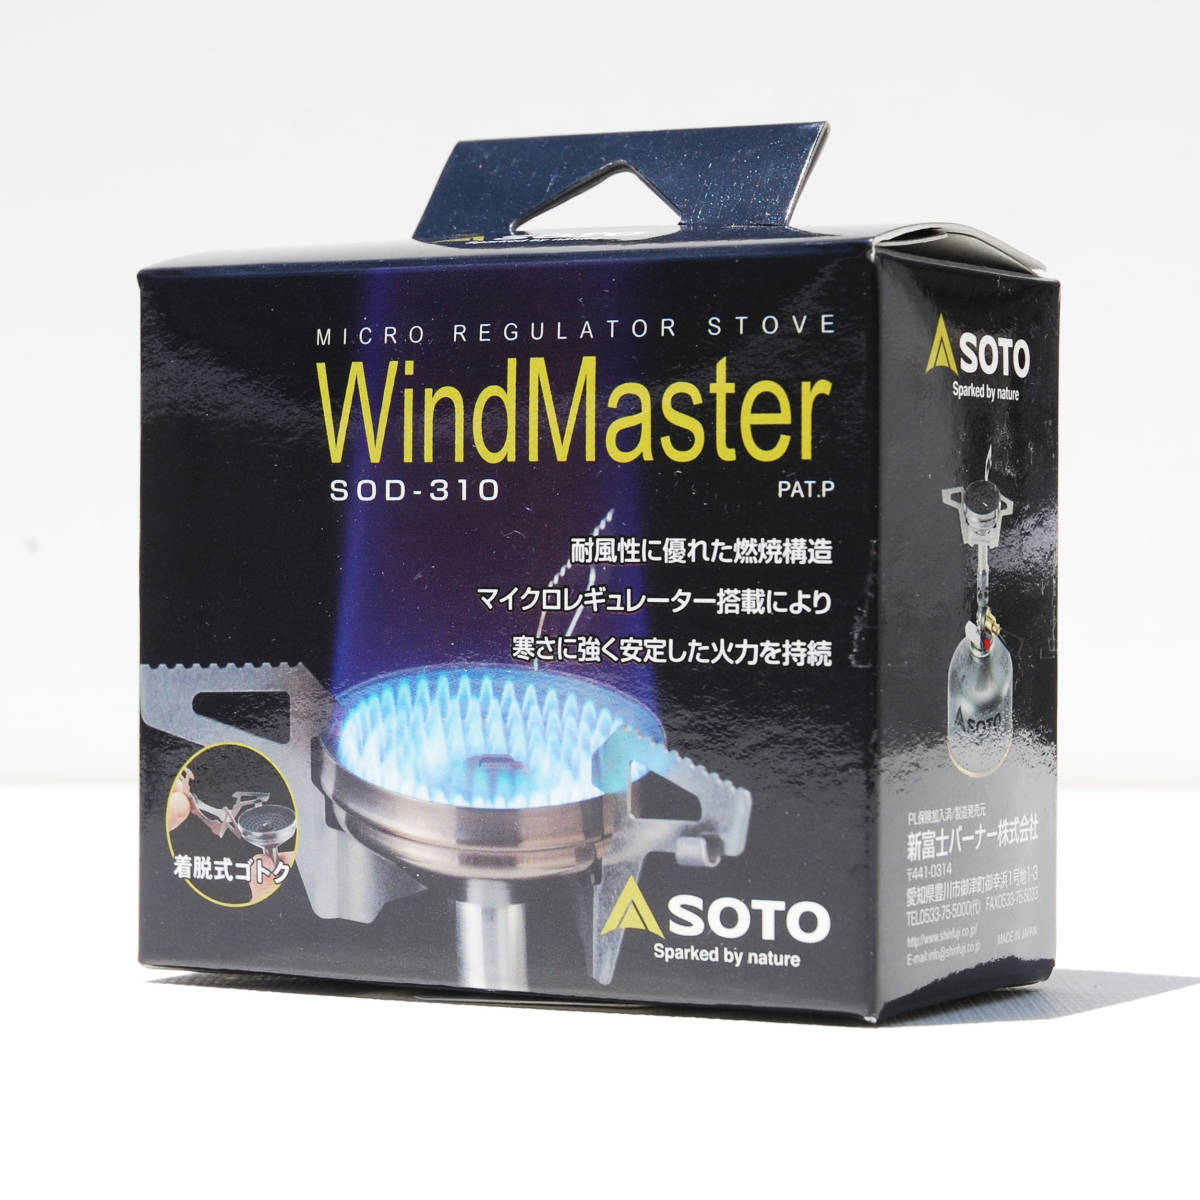 SOTO マイクロレギュレーターストーブ ウインドマスター SOD-310